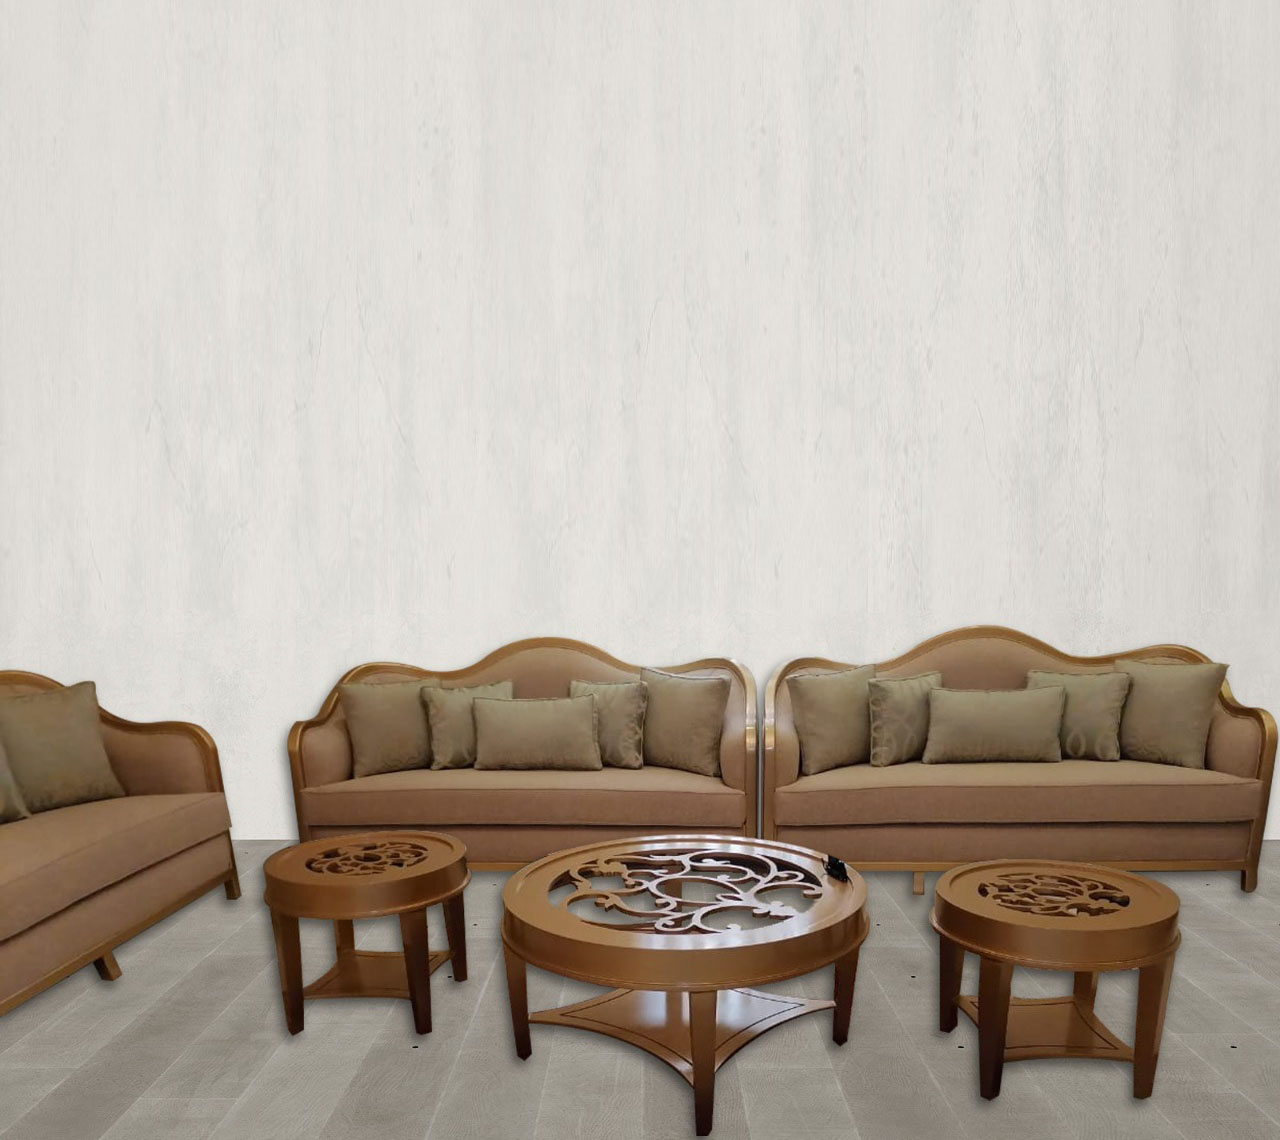 SULTAN Sofa Set Cloth Material 3+3+3+1+1 With Tea Tables Set 3pcs 